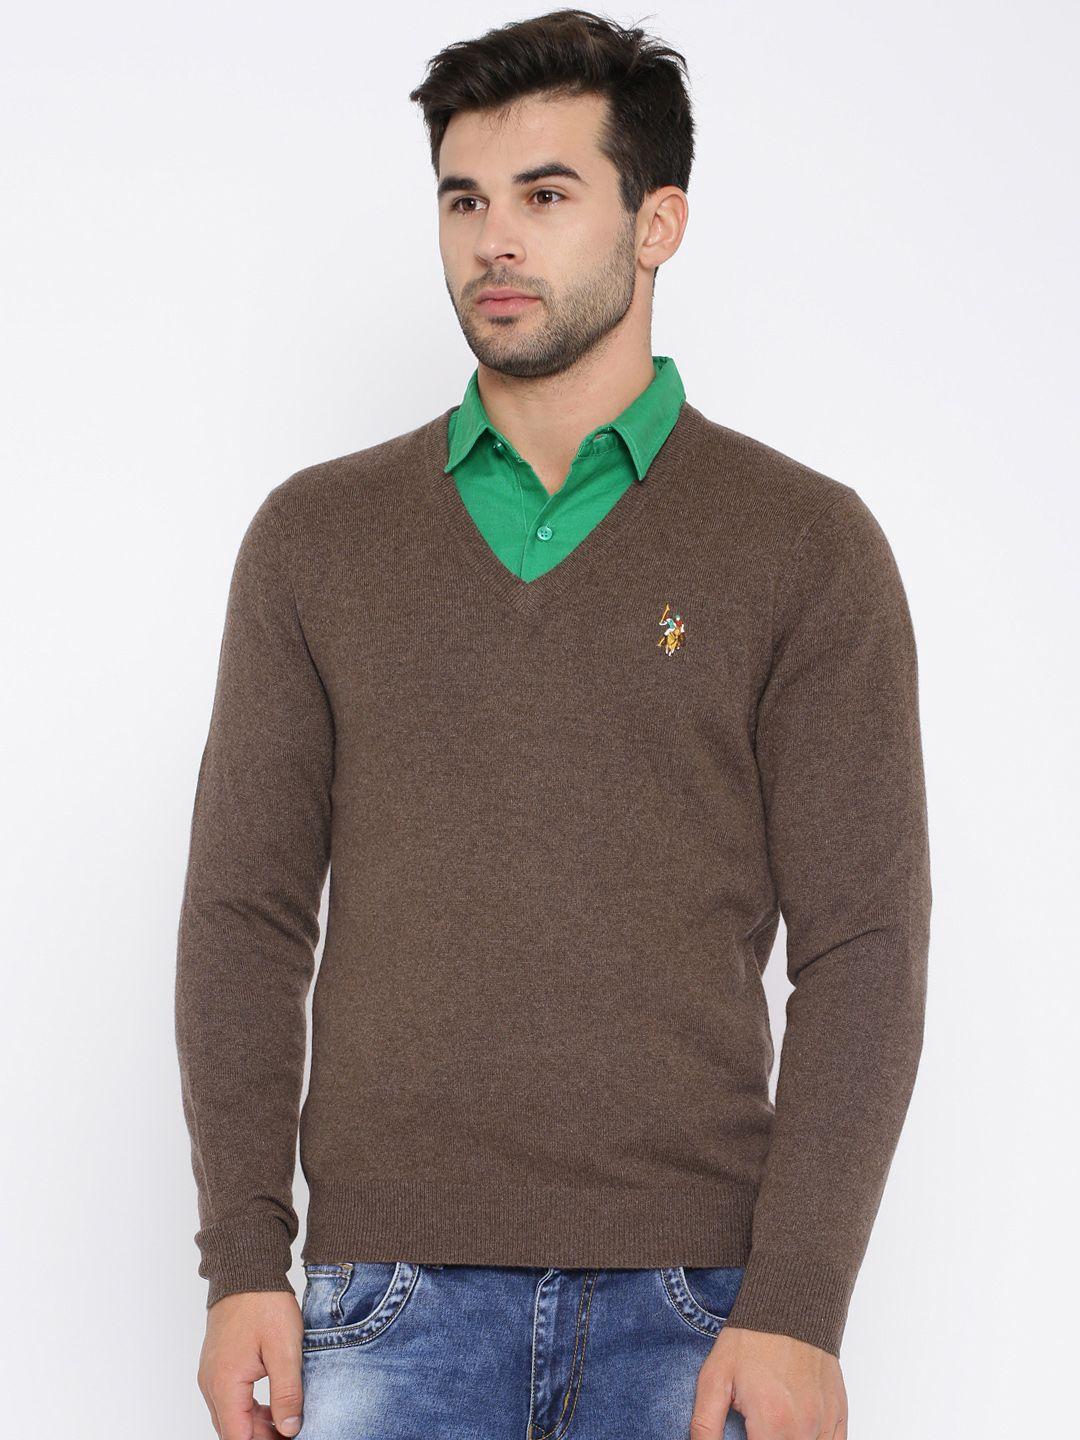 U.S. Polo Assn. Brown Woollen Sweater